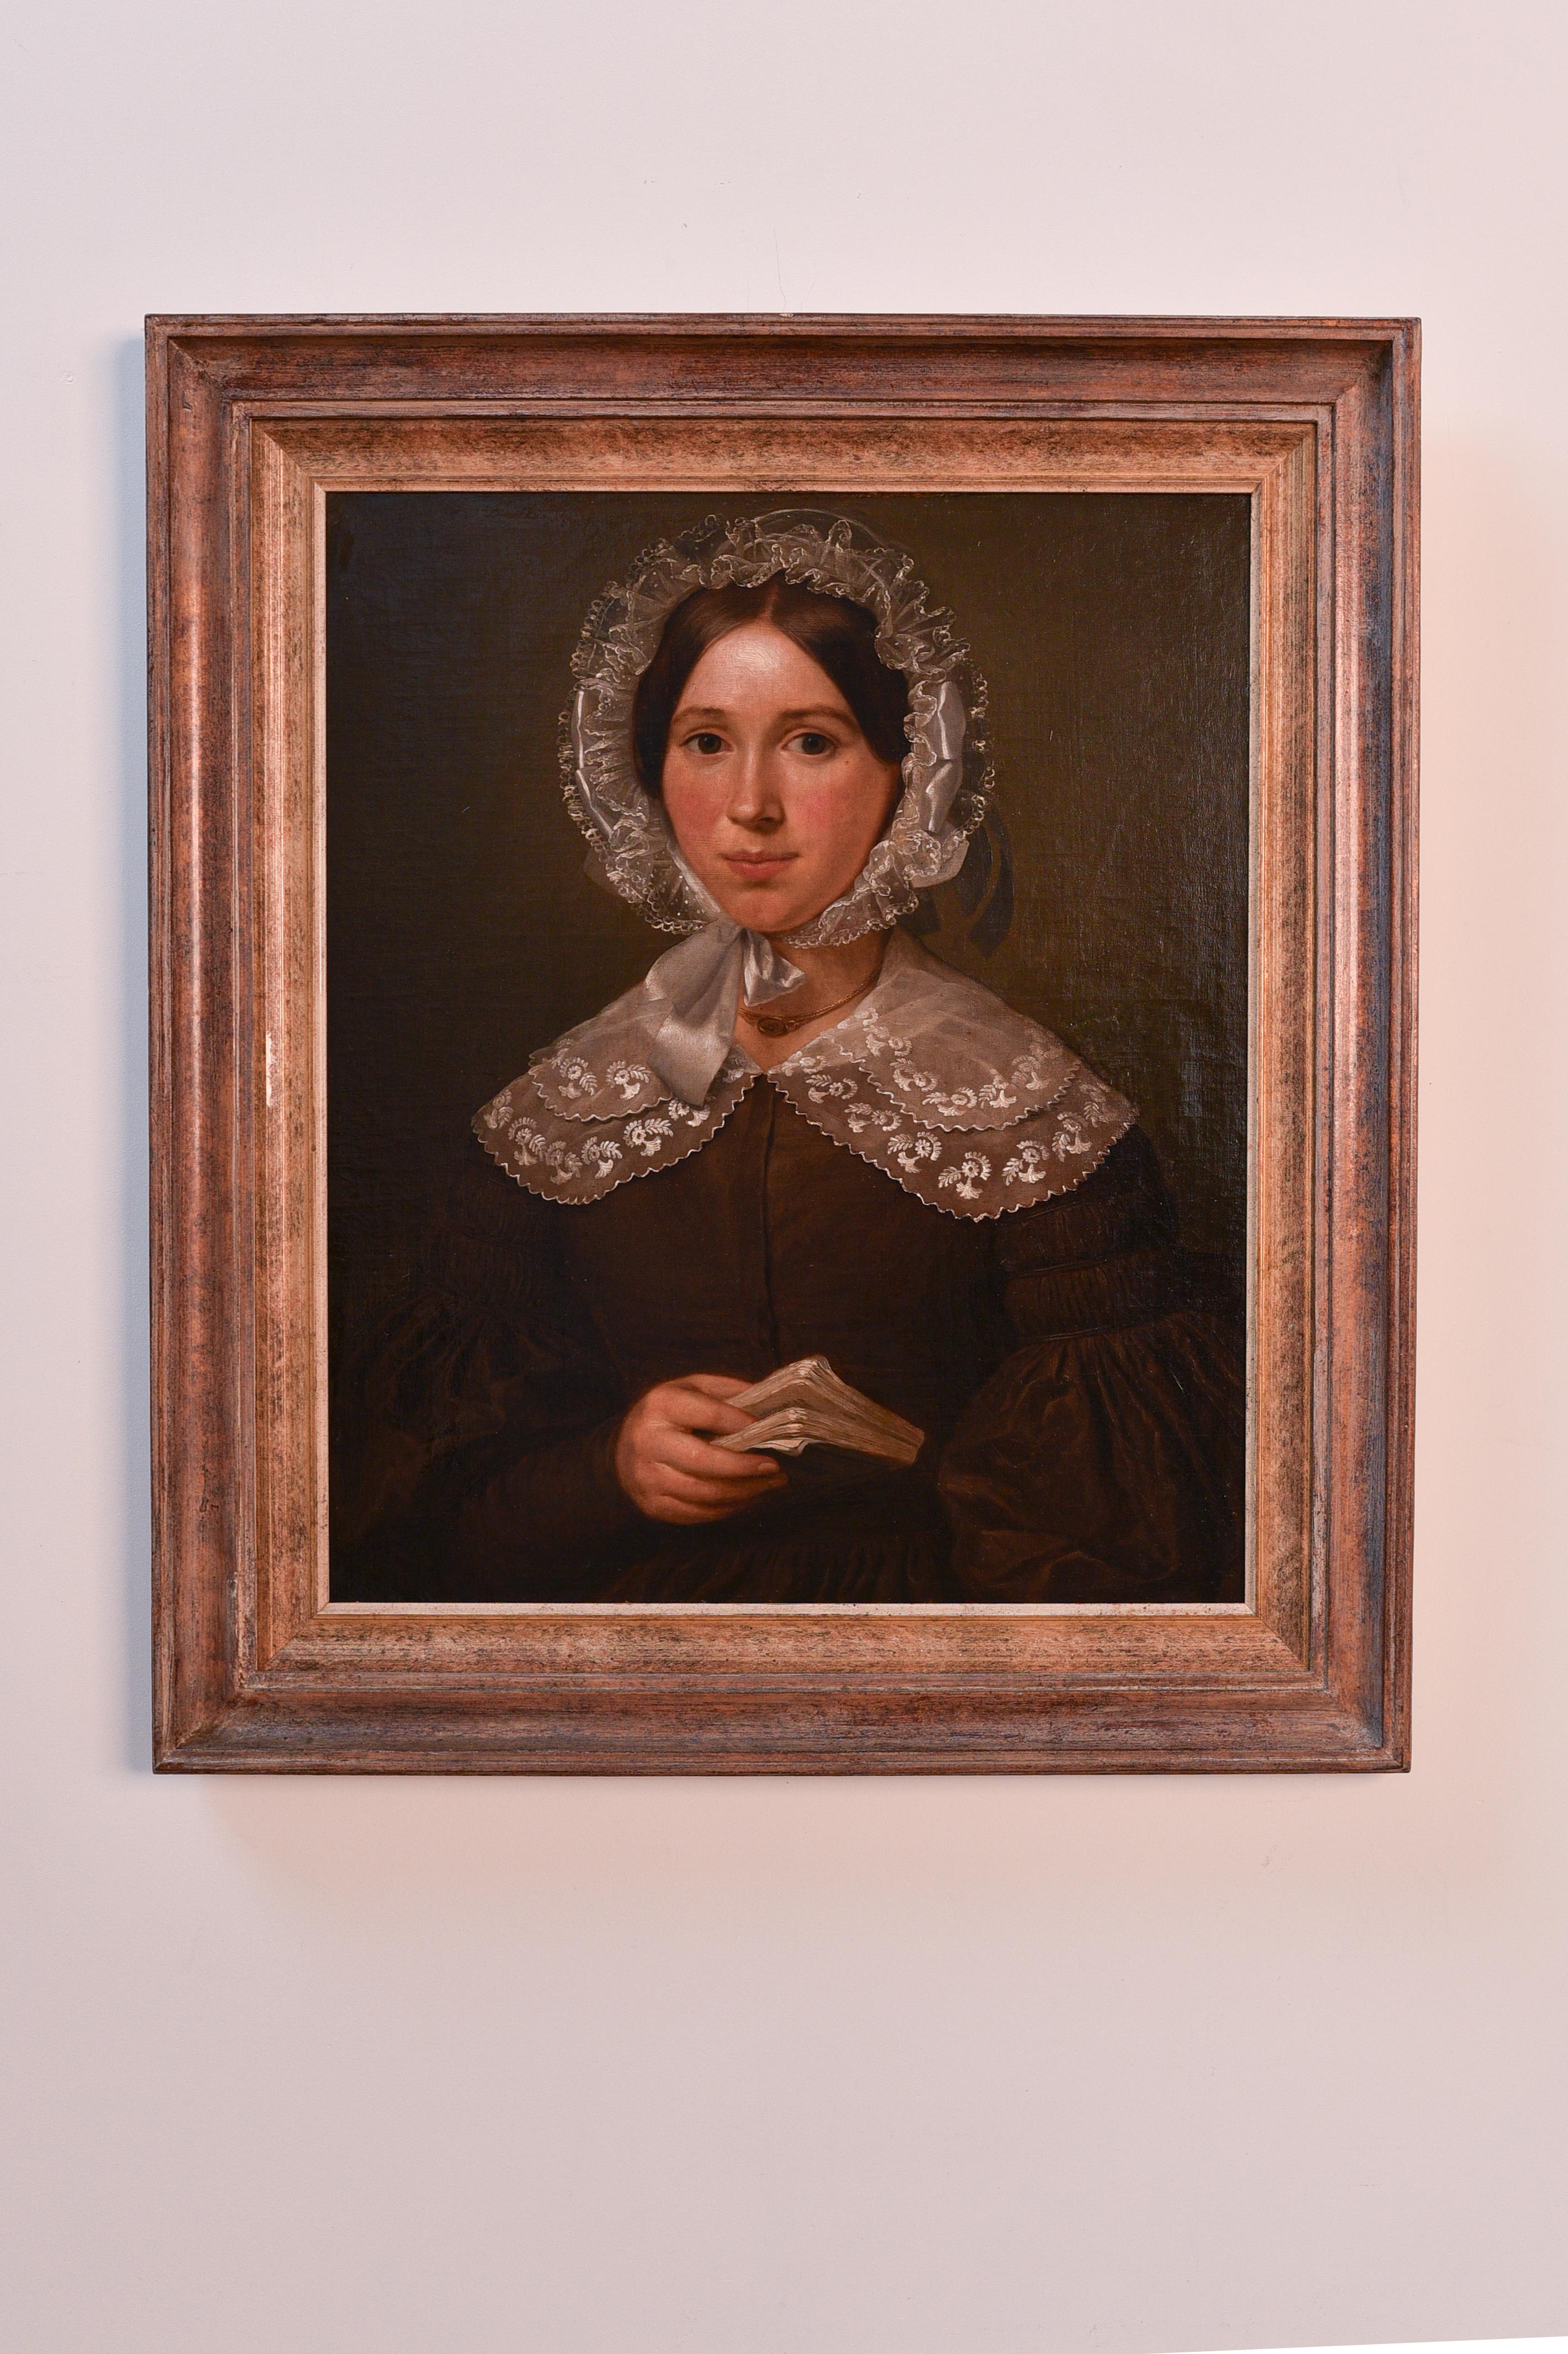 Fin du 19e siècle, huile sur carton, portrait d'une dame avec un livre et de la dentelle  - Réalisme Painting par Unknown